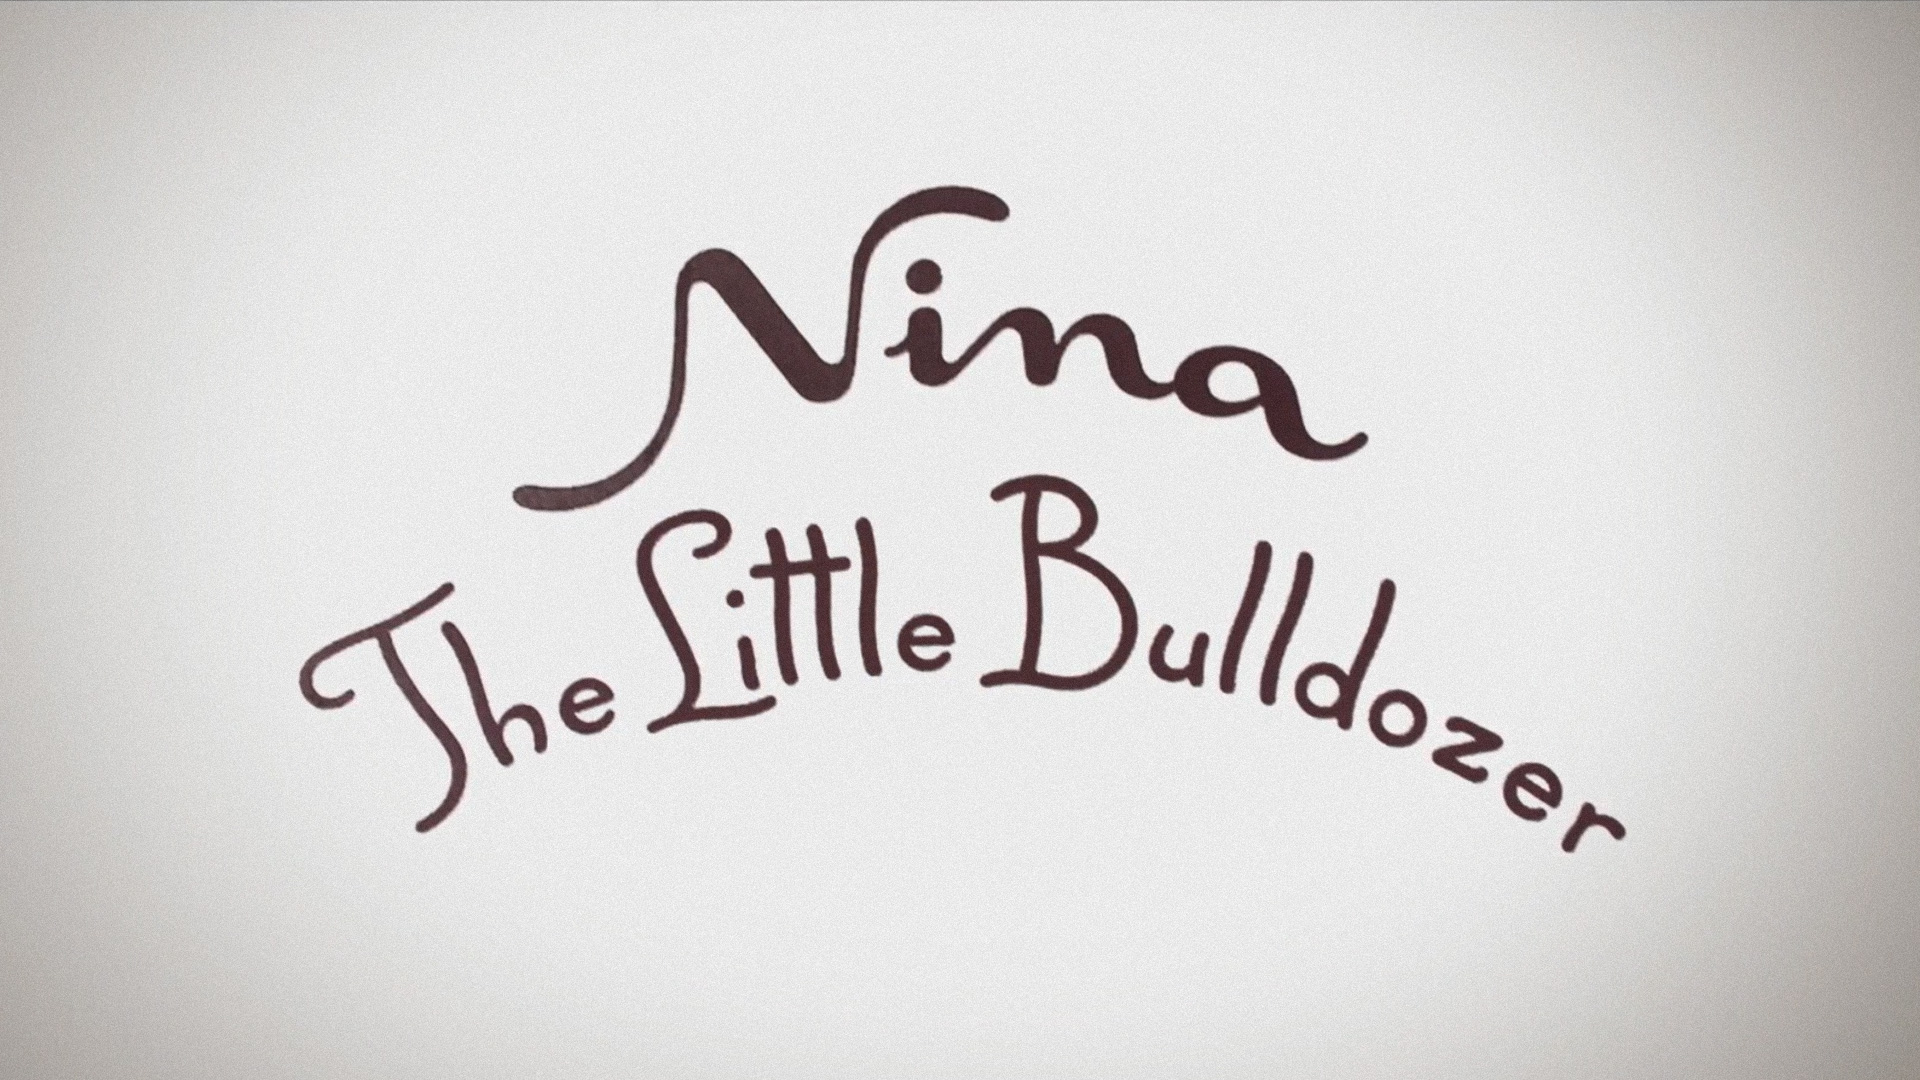 Nina, The Little Bulldozer - Corto de Animación sobre la Epilepsia